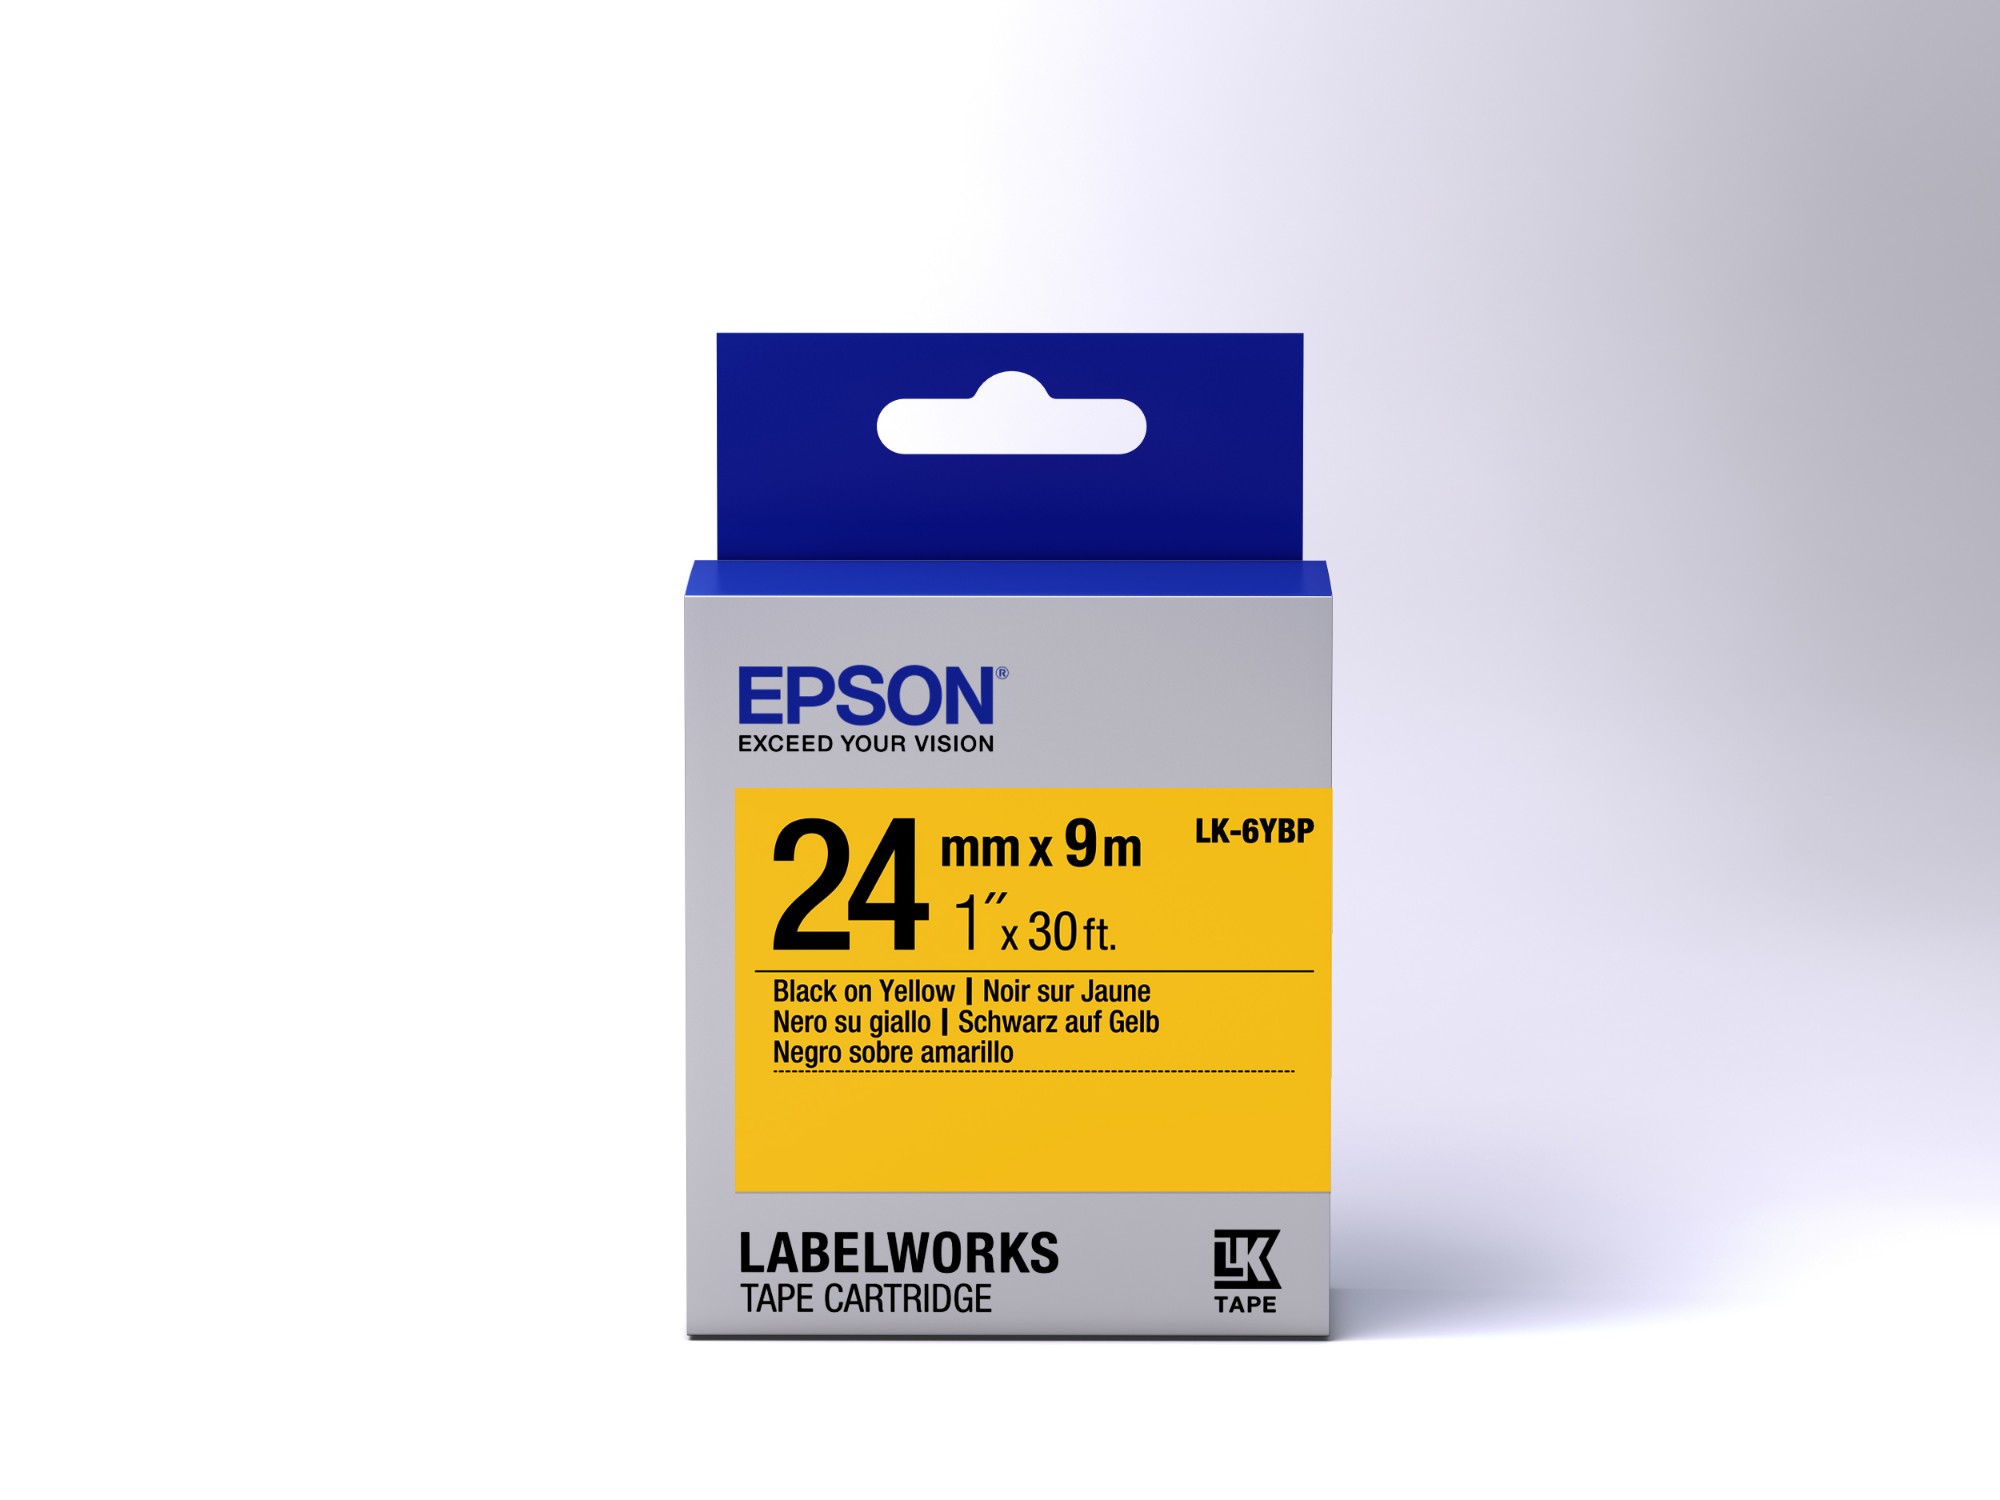 Epson etikettkassett pastell – LK-6YBP pastell svart/gul 24/9